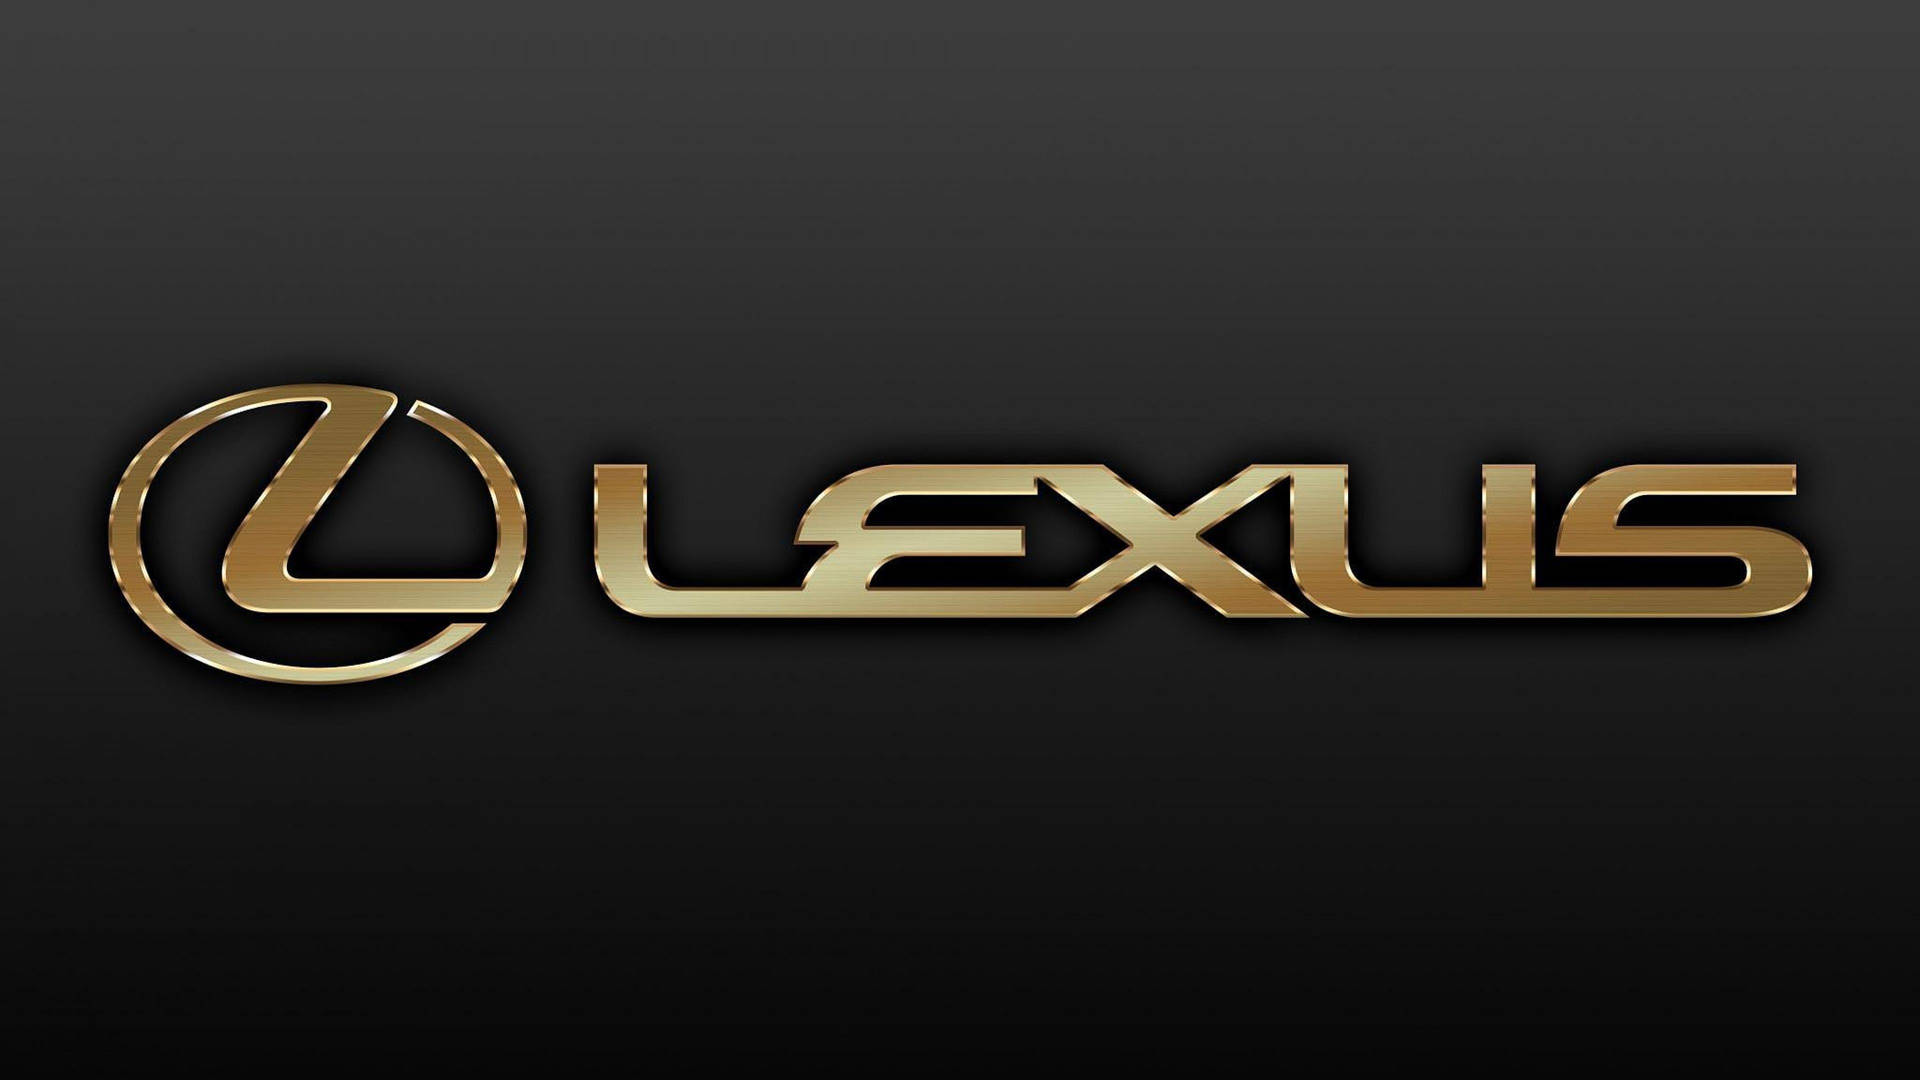 Goldeneslexus-logo. Wallpaper